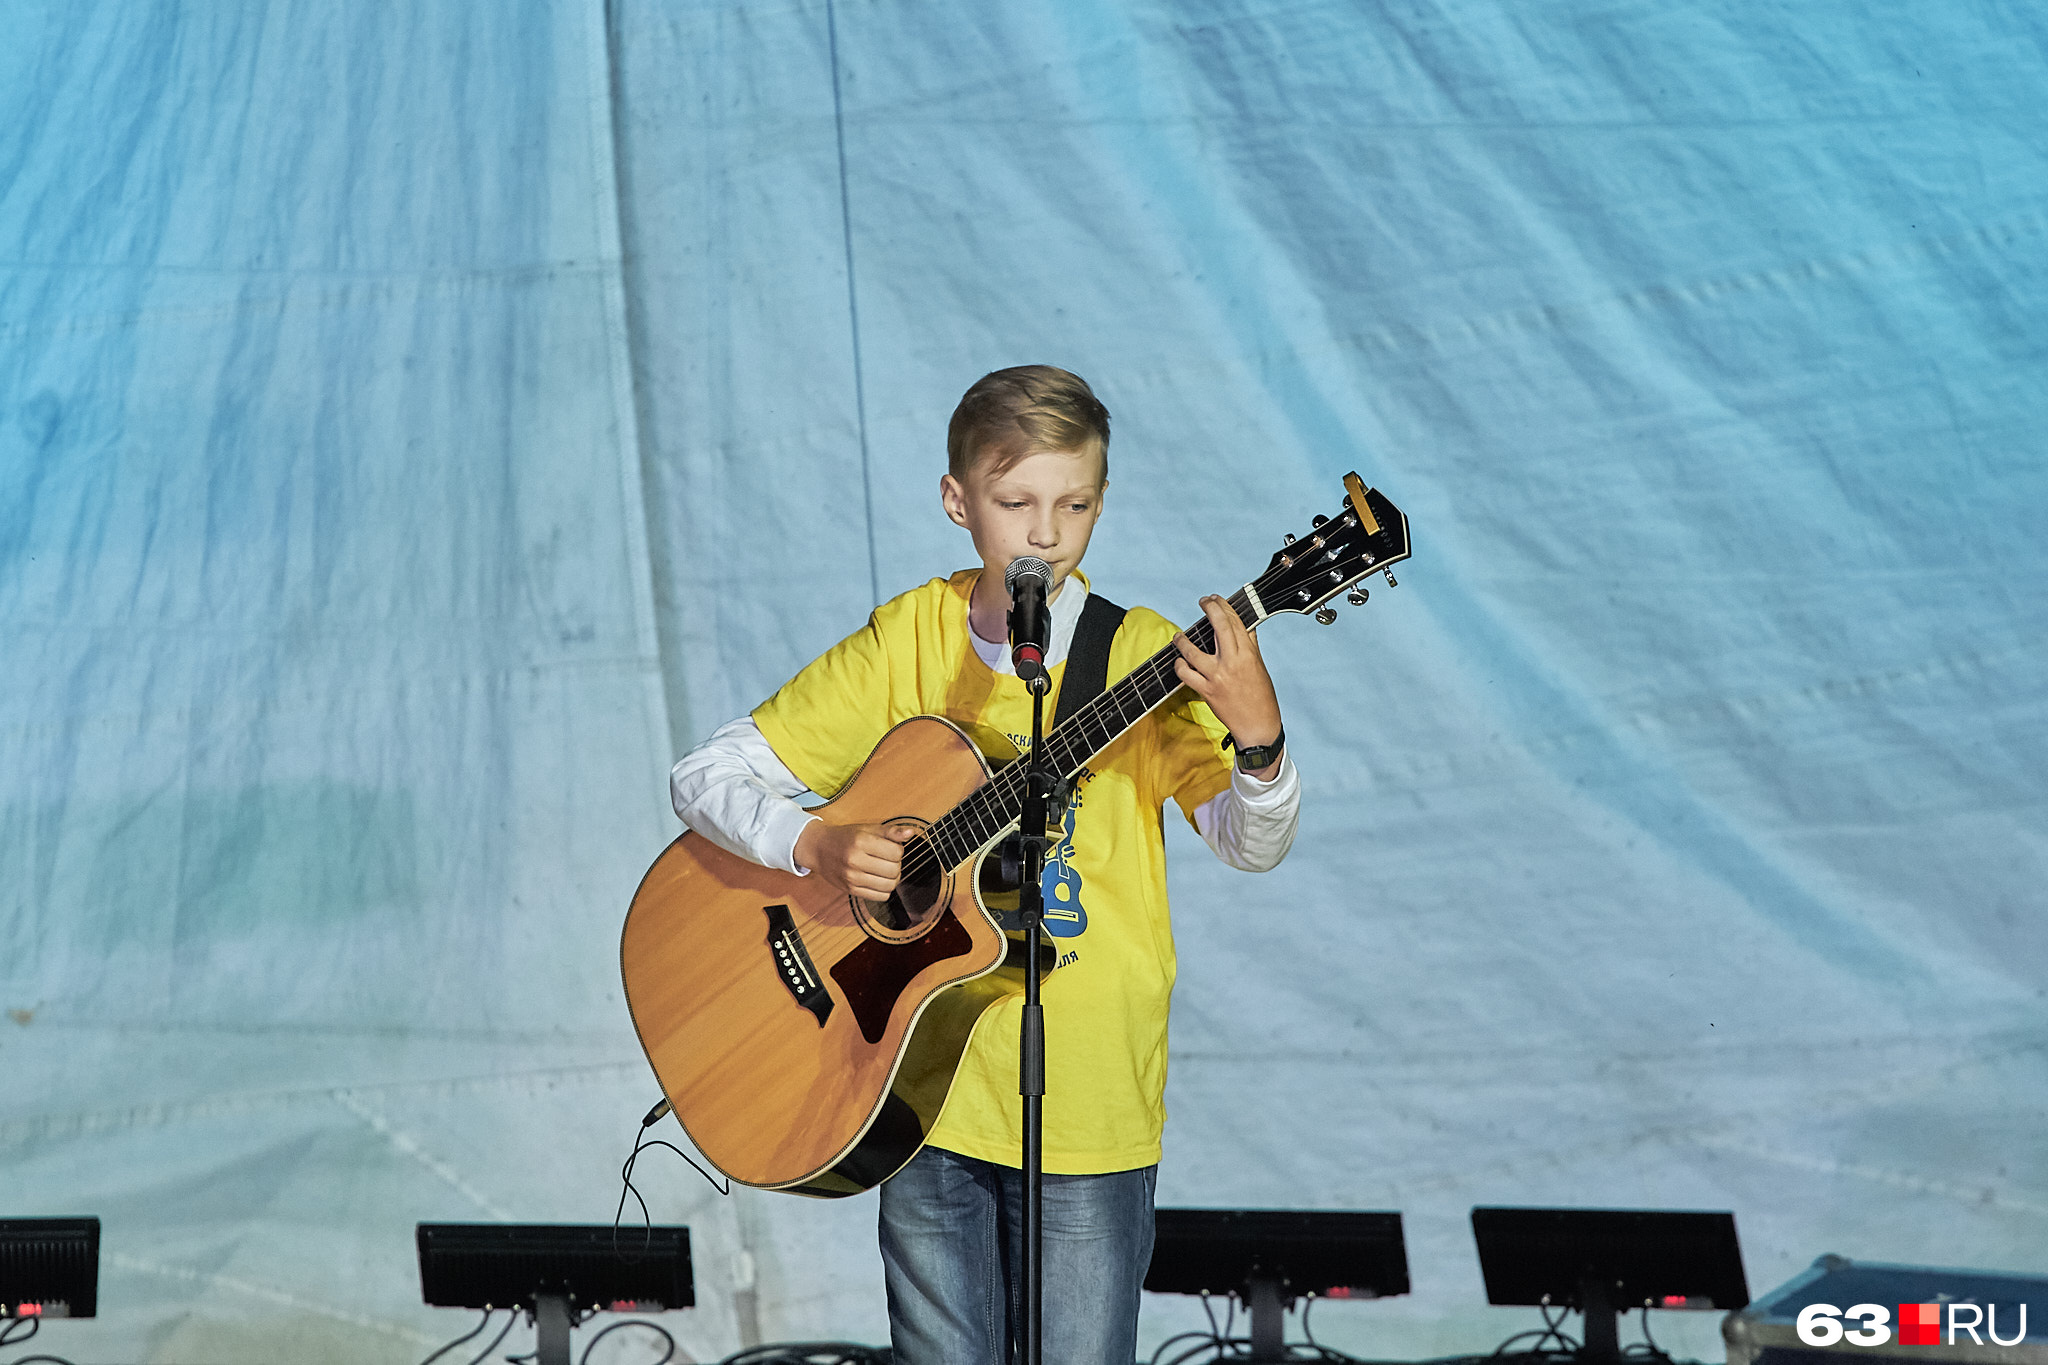 9-летний певец уже поет о трудностях взрослой жизни